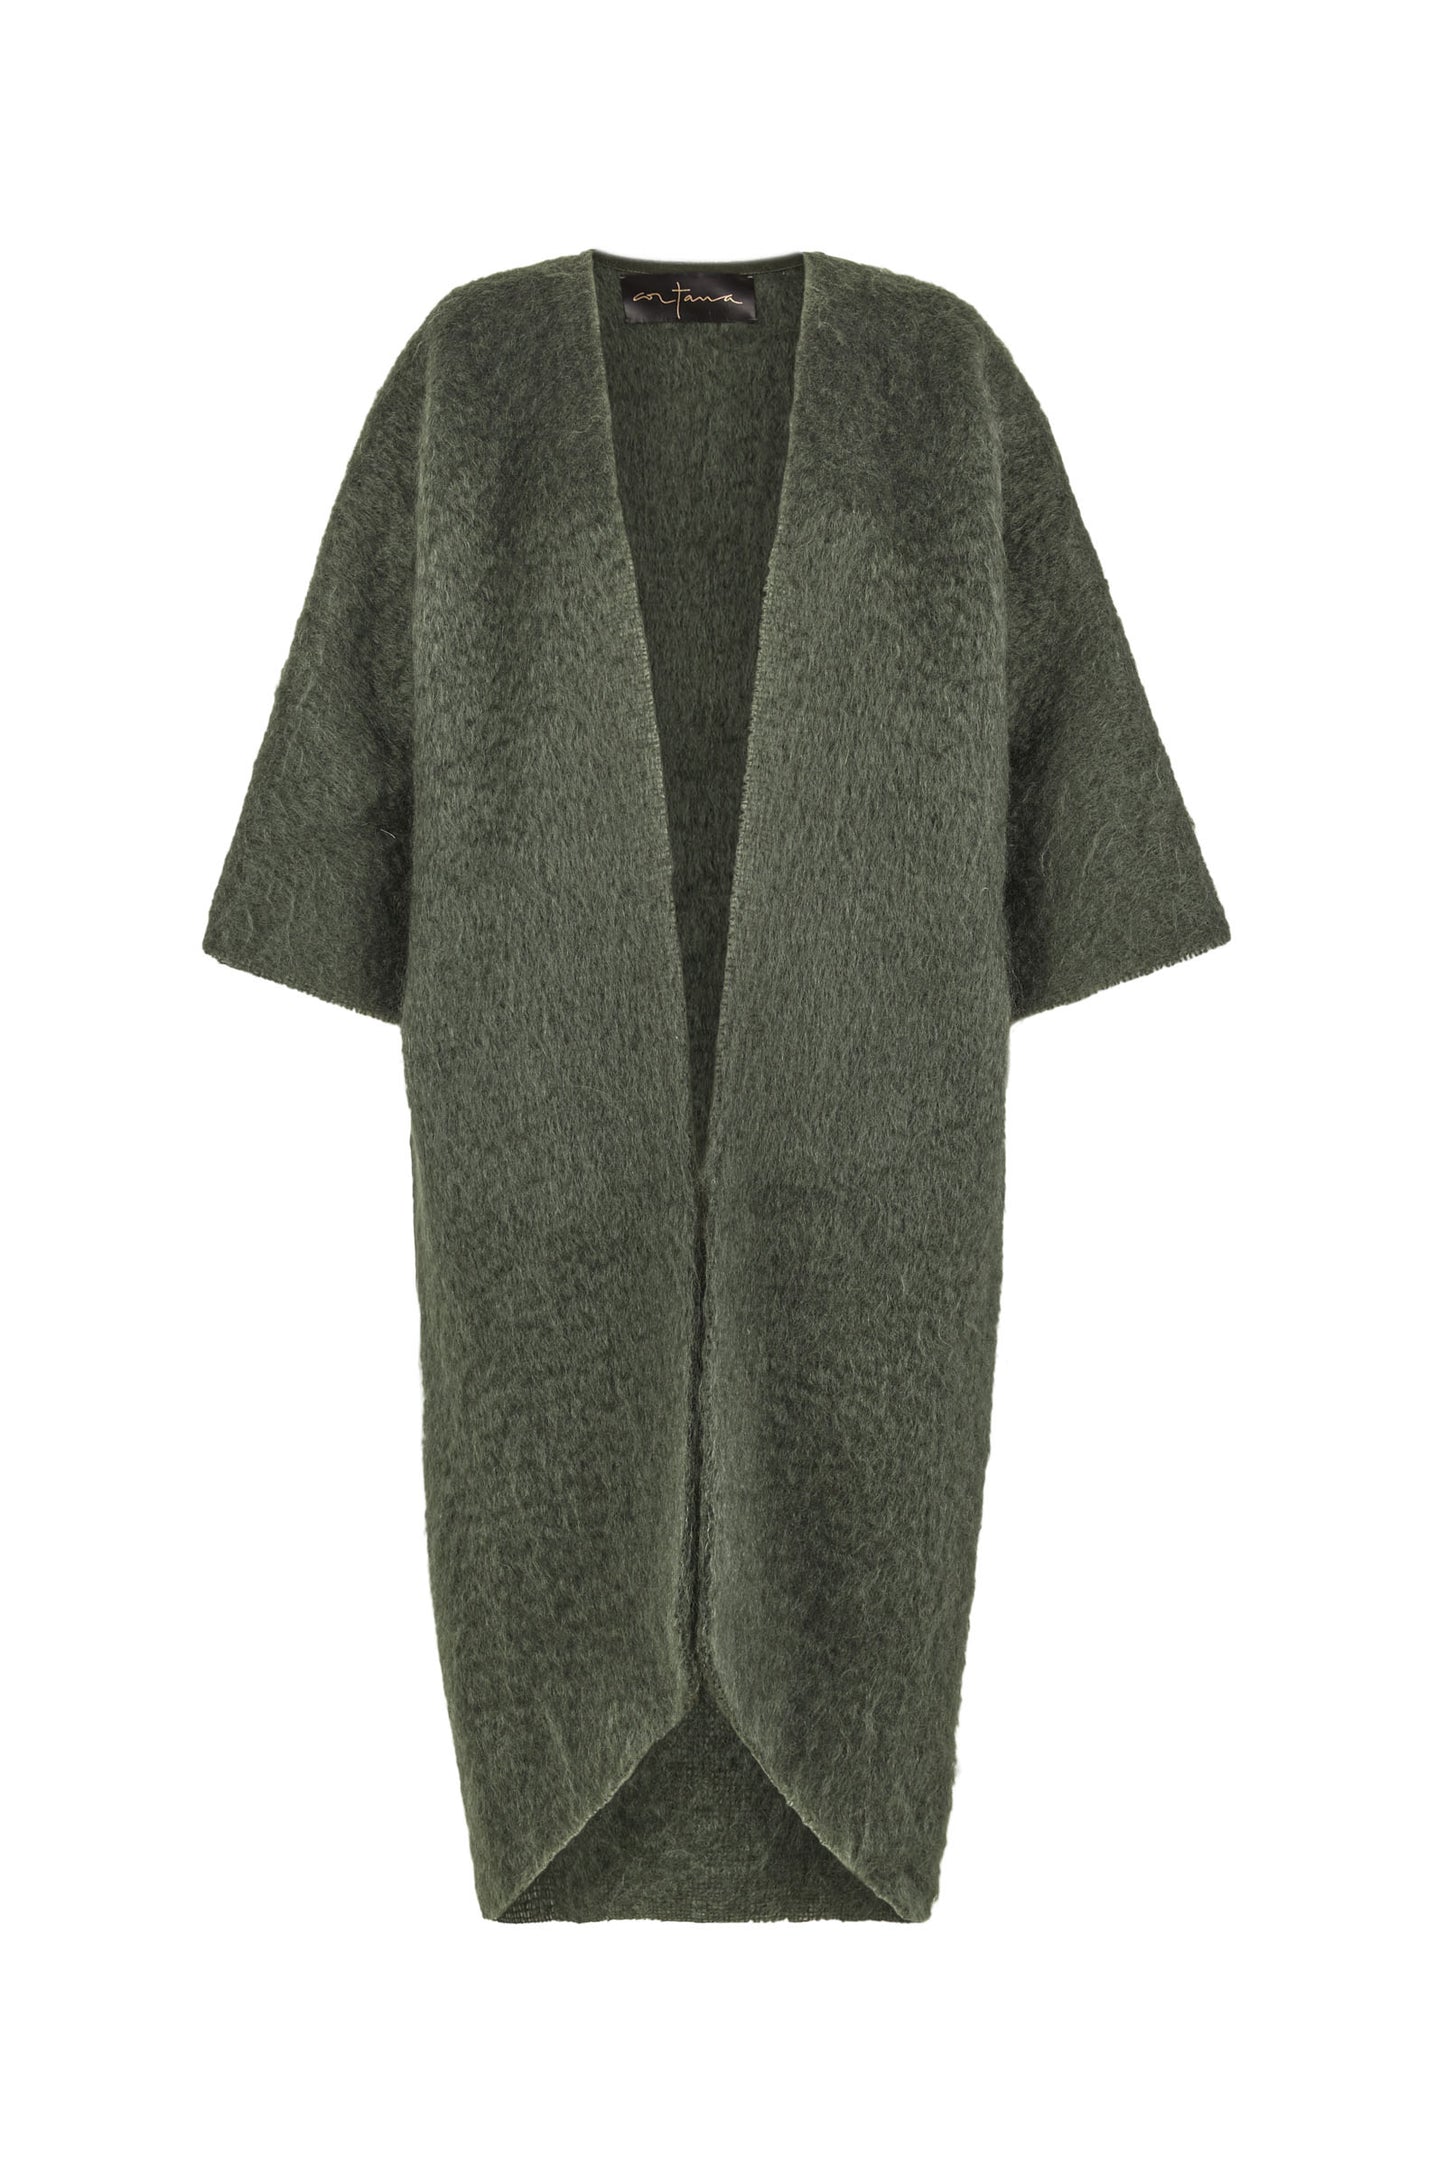 Kuma, abrigo oversize en mohair verde